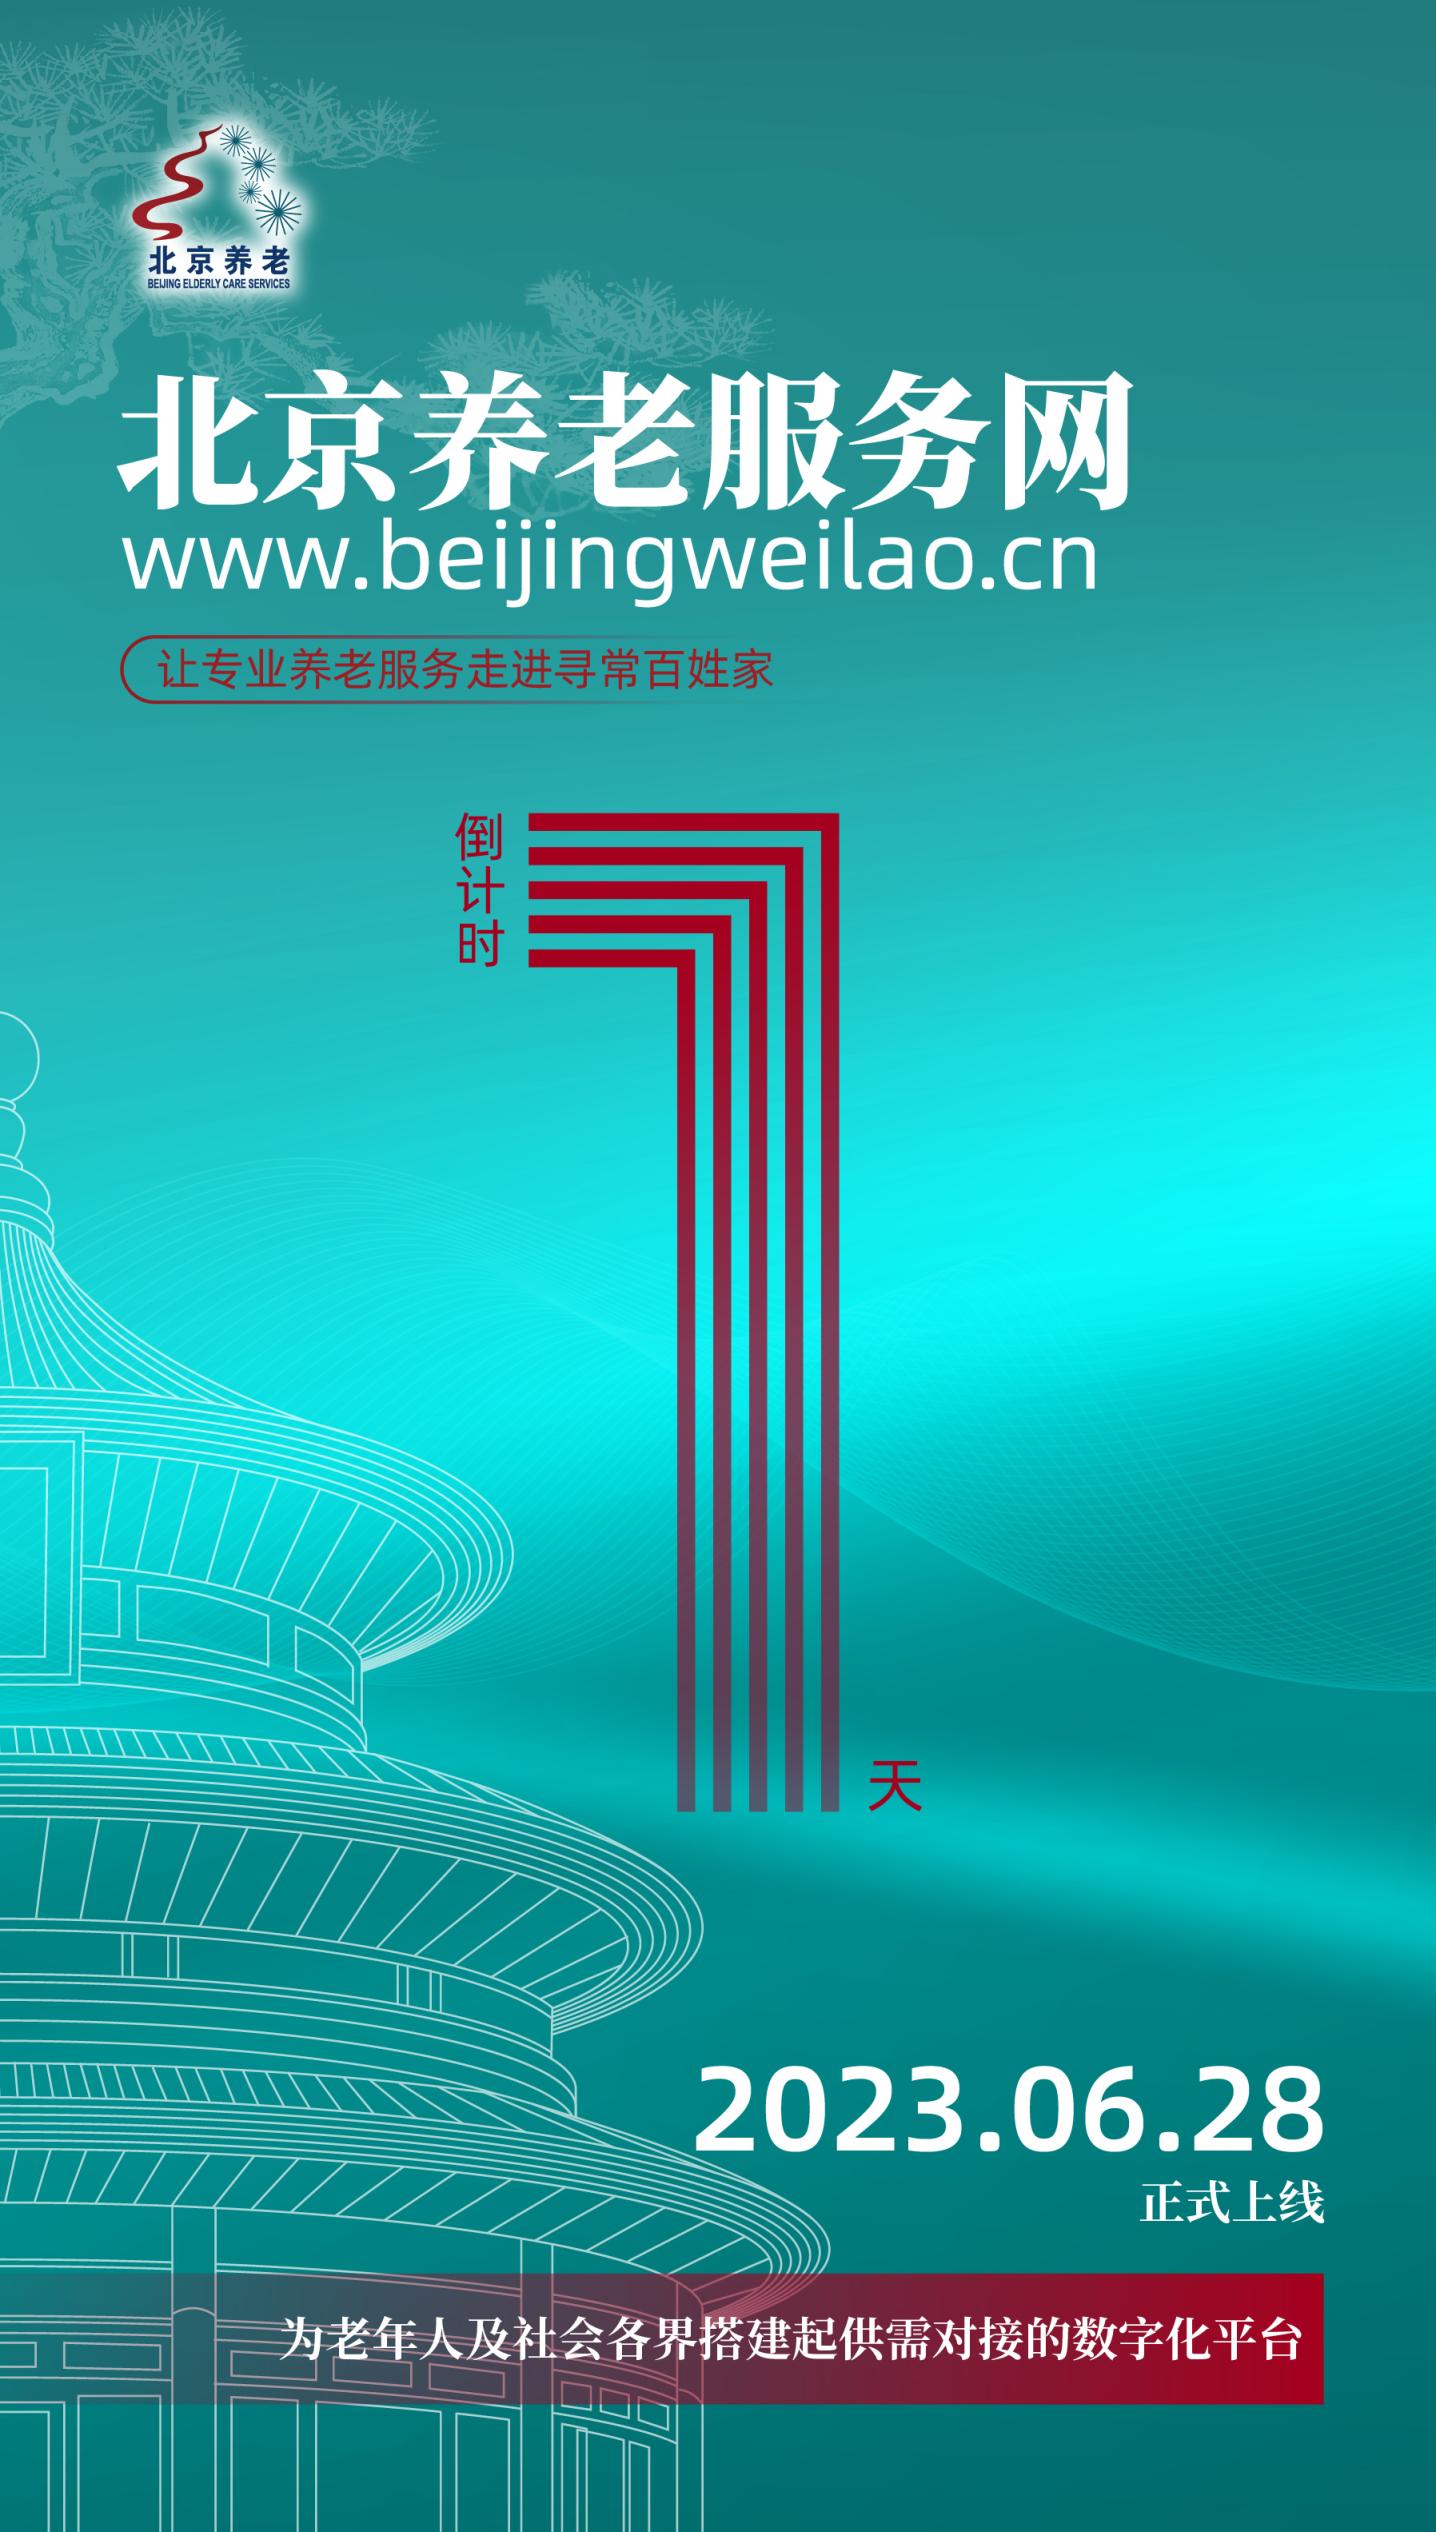 北京养老服务网明日开通！全市574家养老机构集体上线